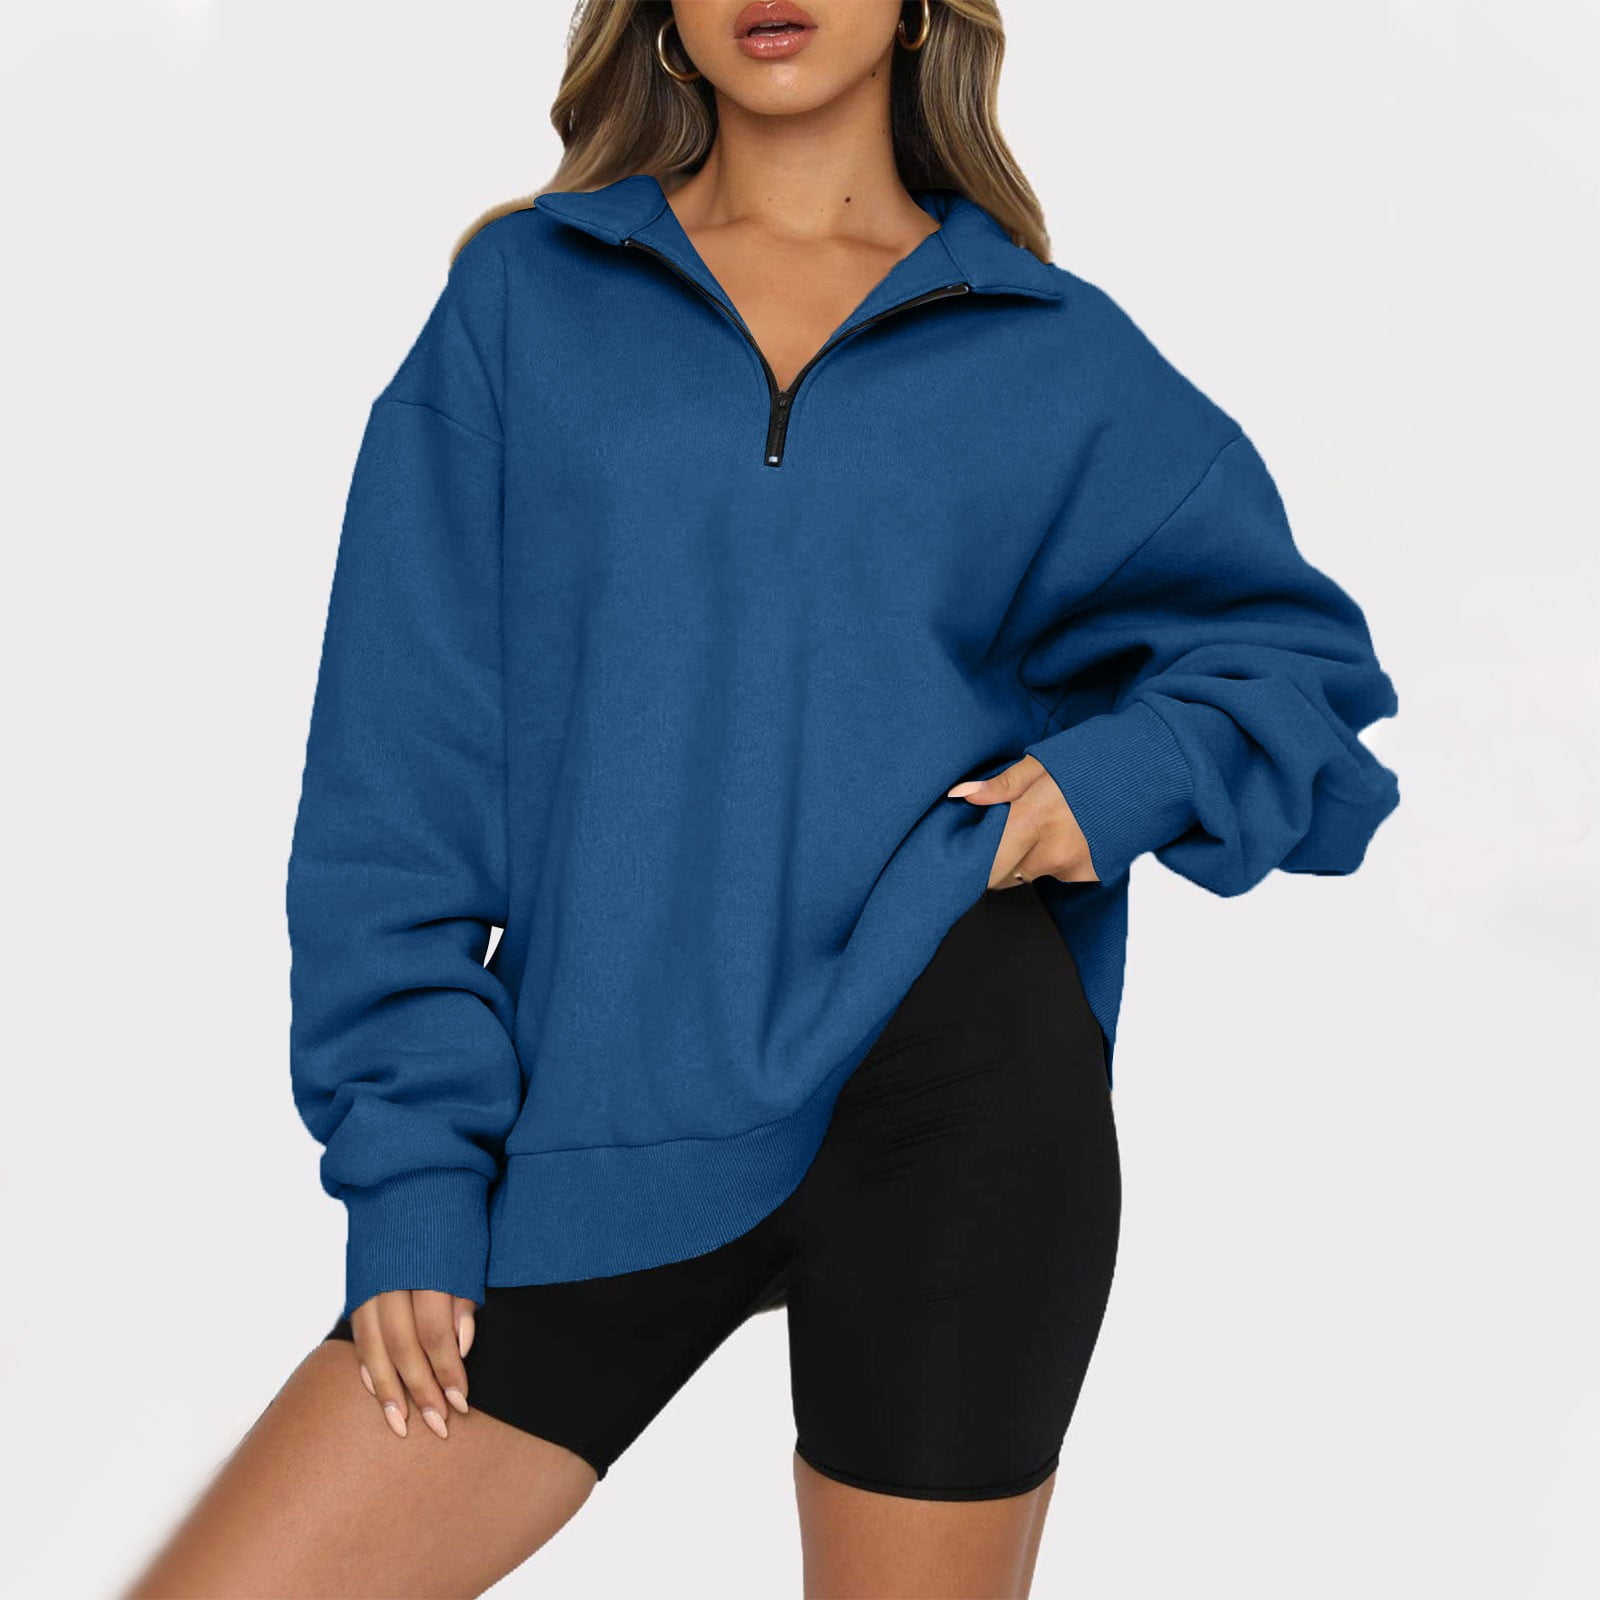 TQWQT Oversized Hoodie for Women Half Zip Pullover Fleece